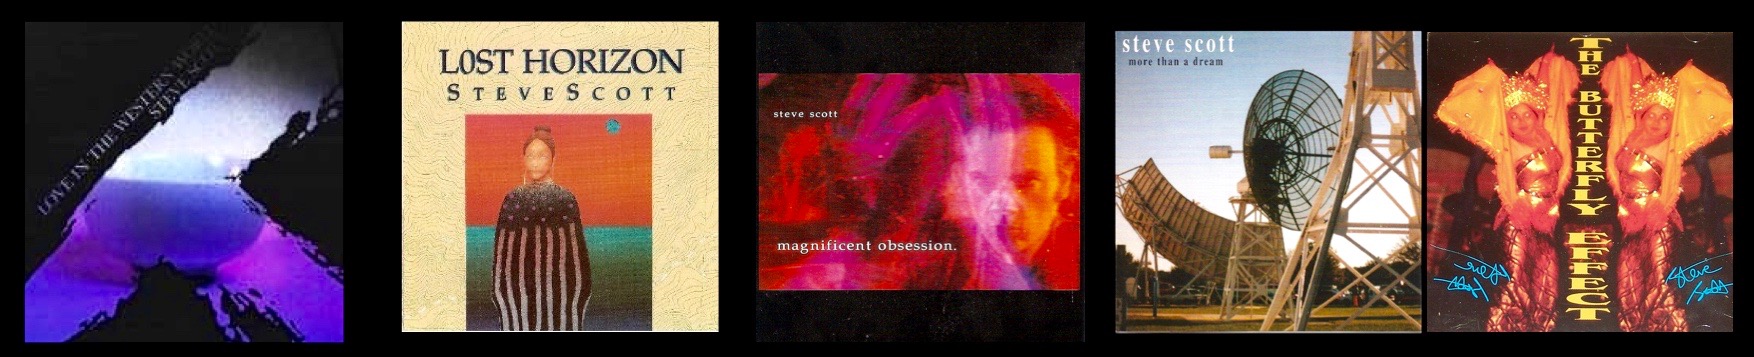 Steve Scott albums